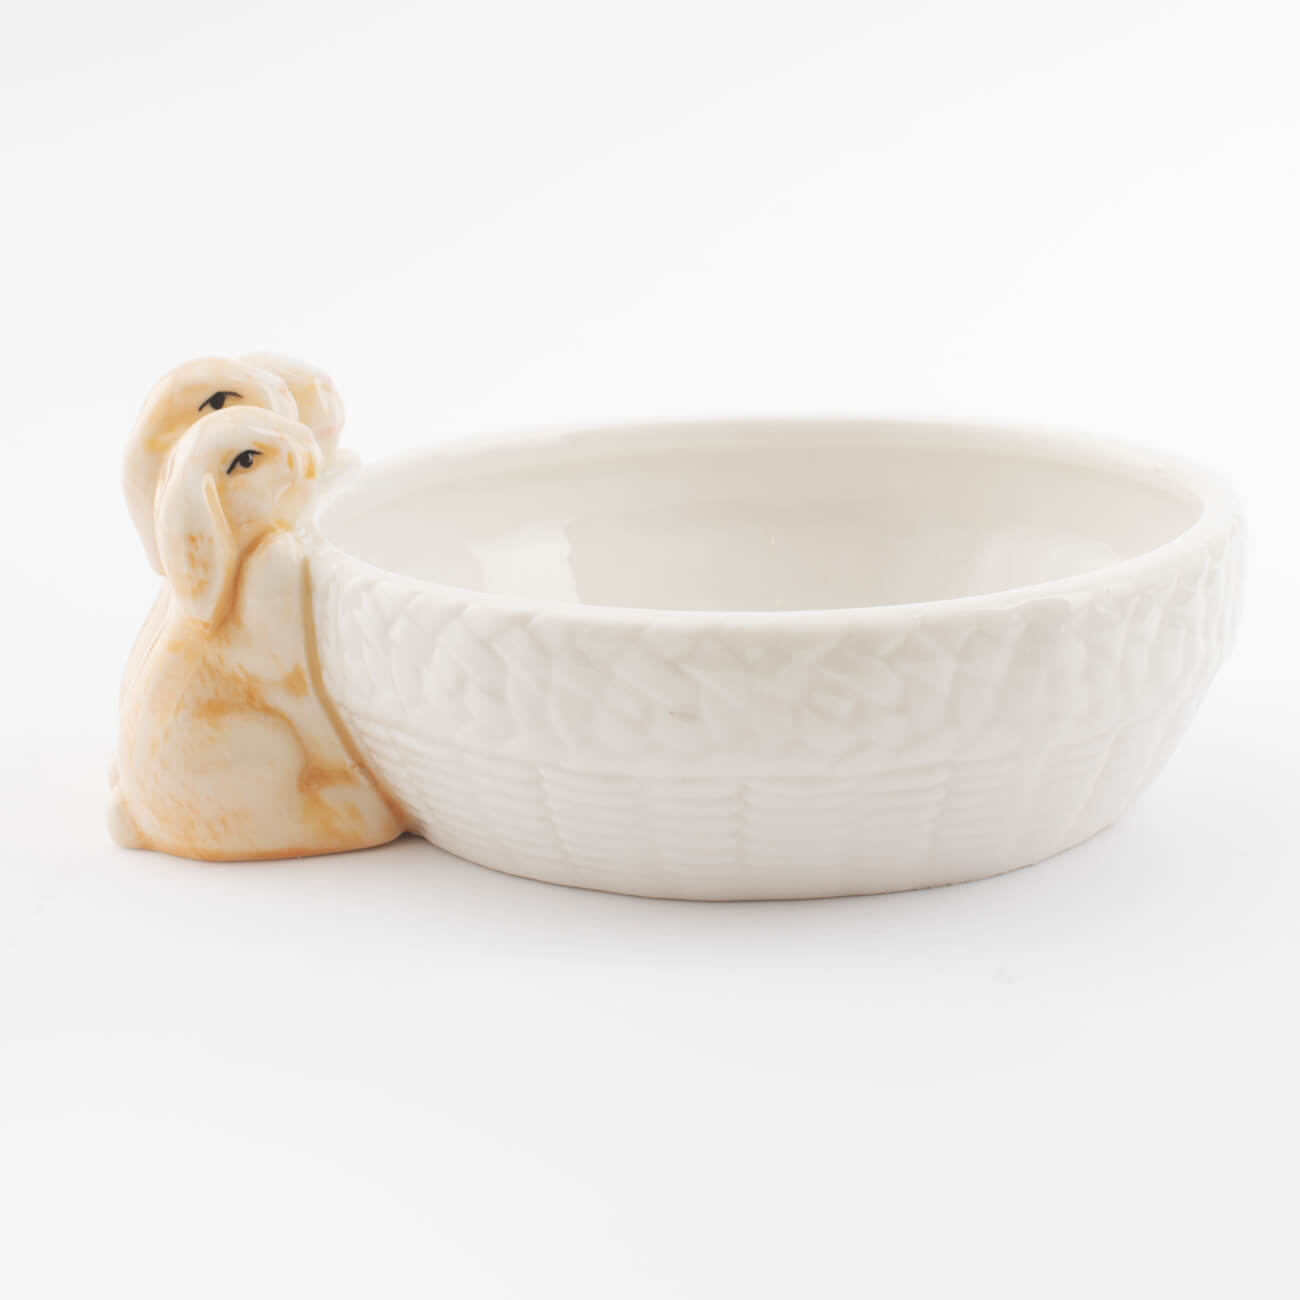 Салатник, 17x14 см, 390 мл, фарфор Porcelain, бело-бежевый, Три кролика у корзинки, Natural Easter